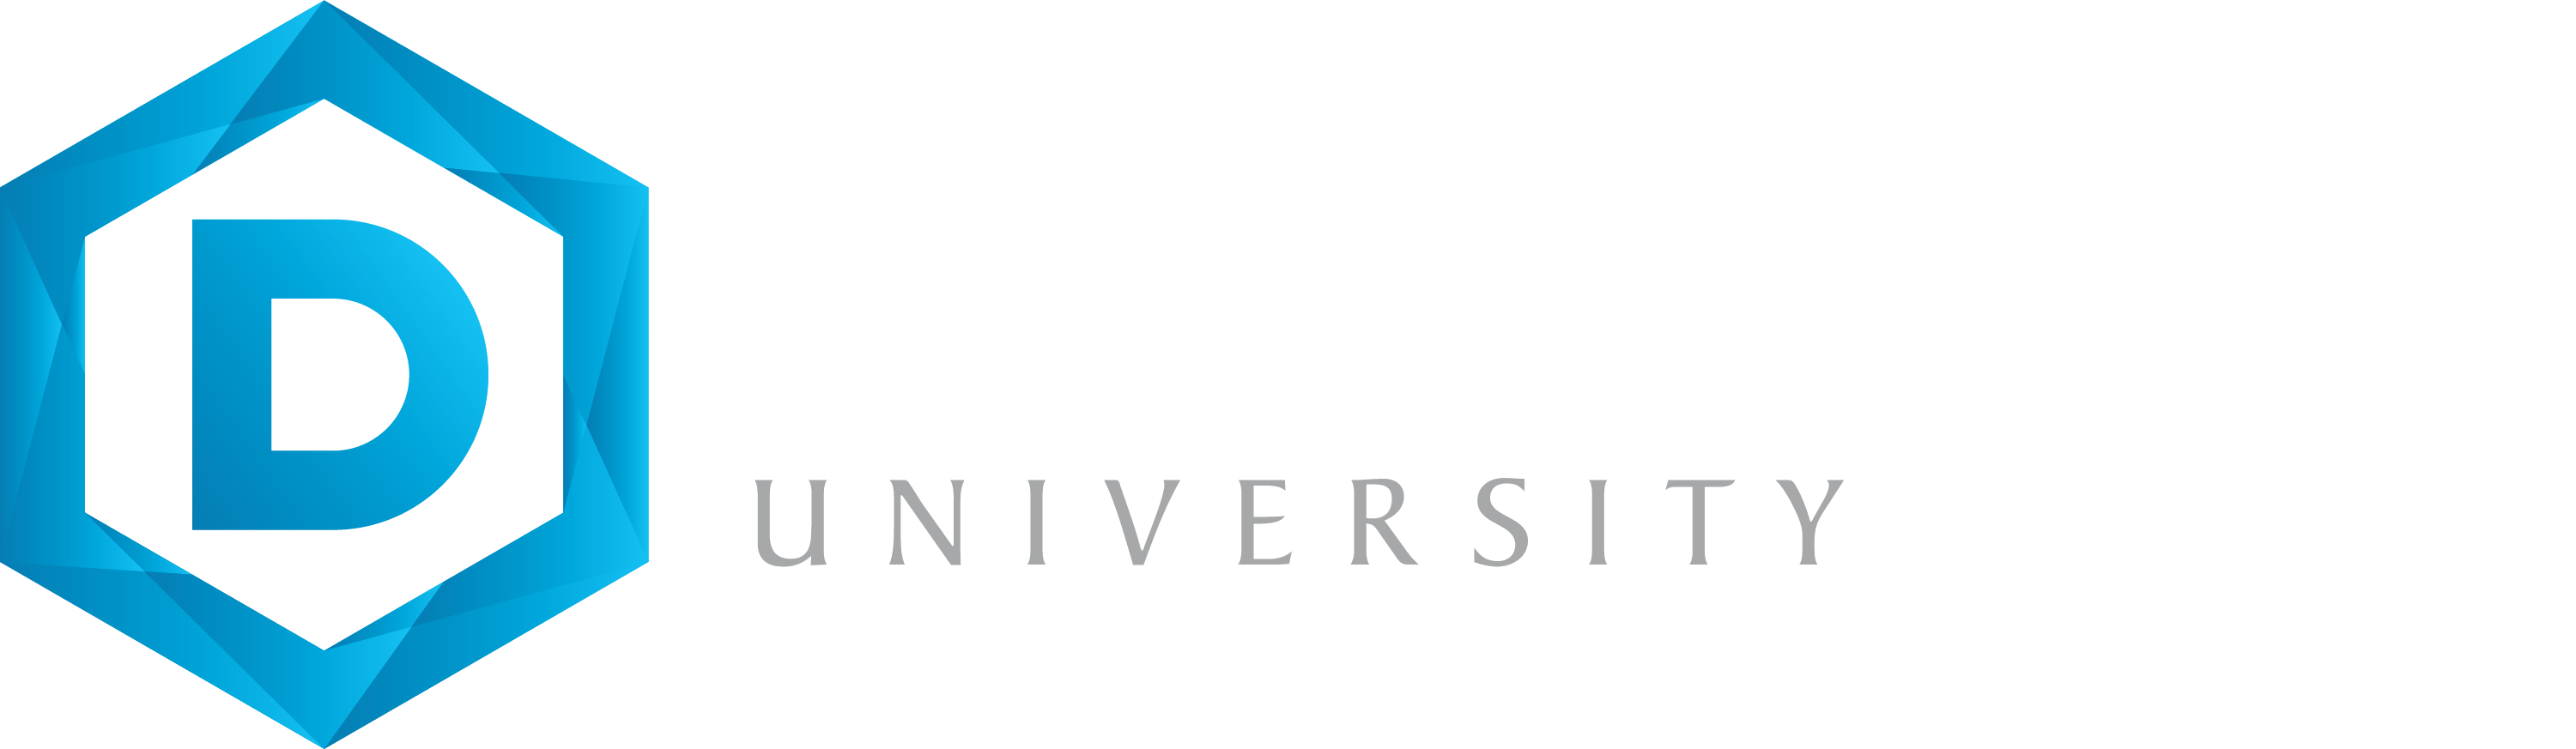 Dakota State University Logo